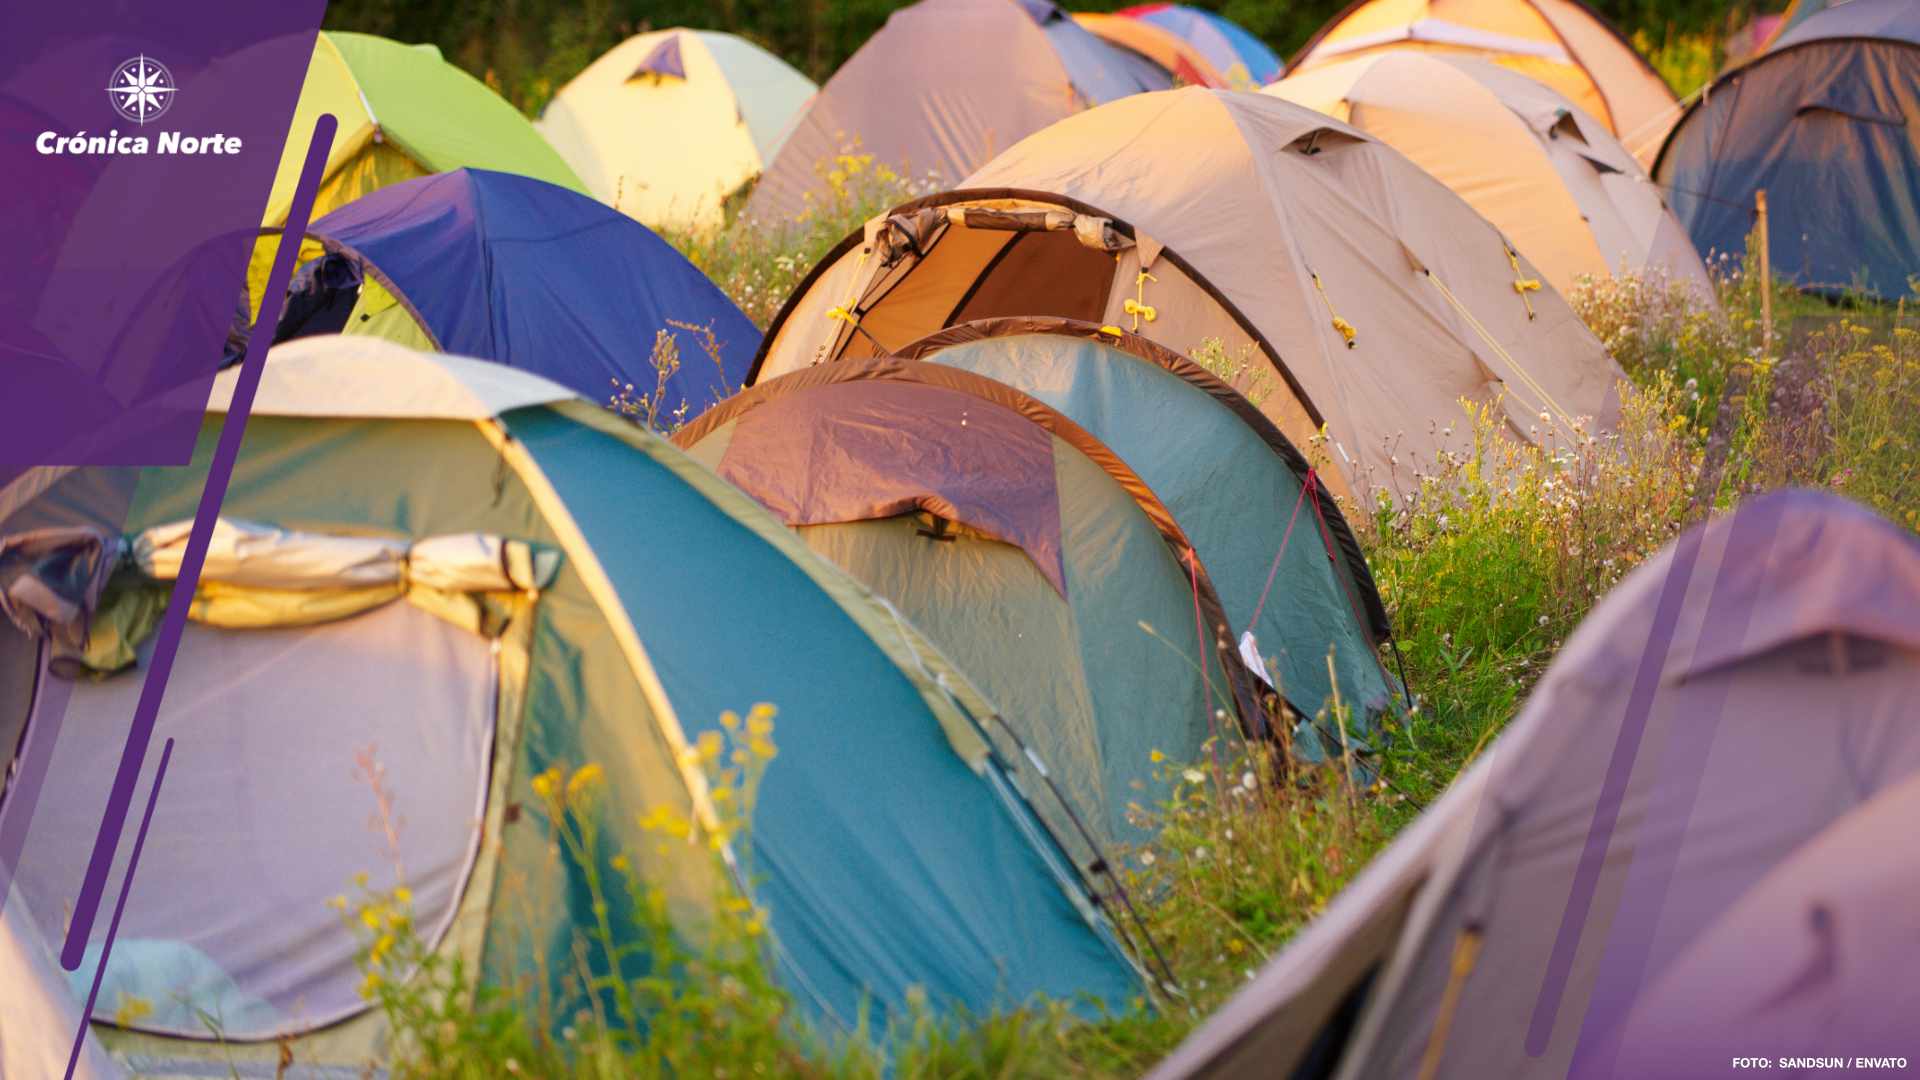 Buscan evitar retiro de campamentos para itinerantes